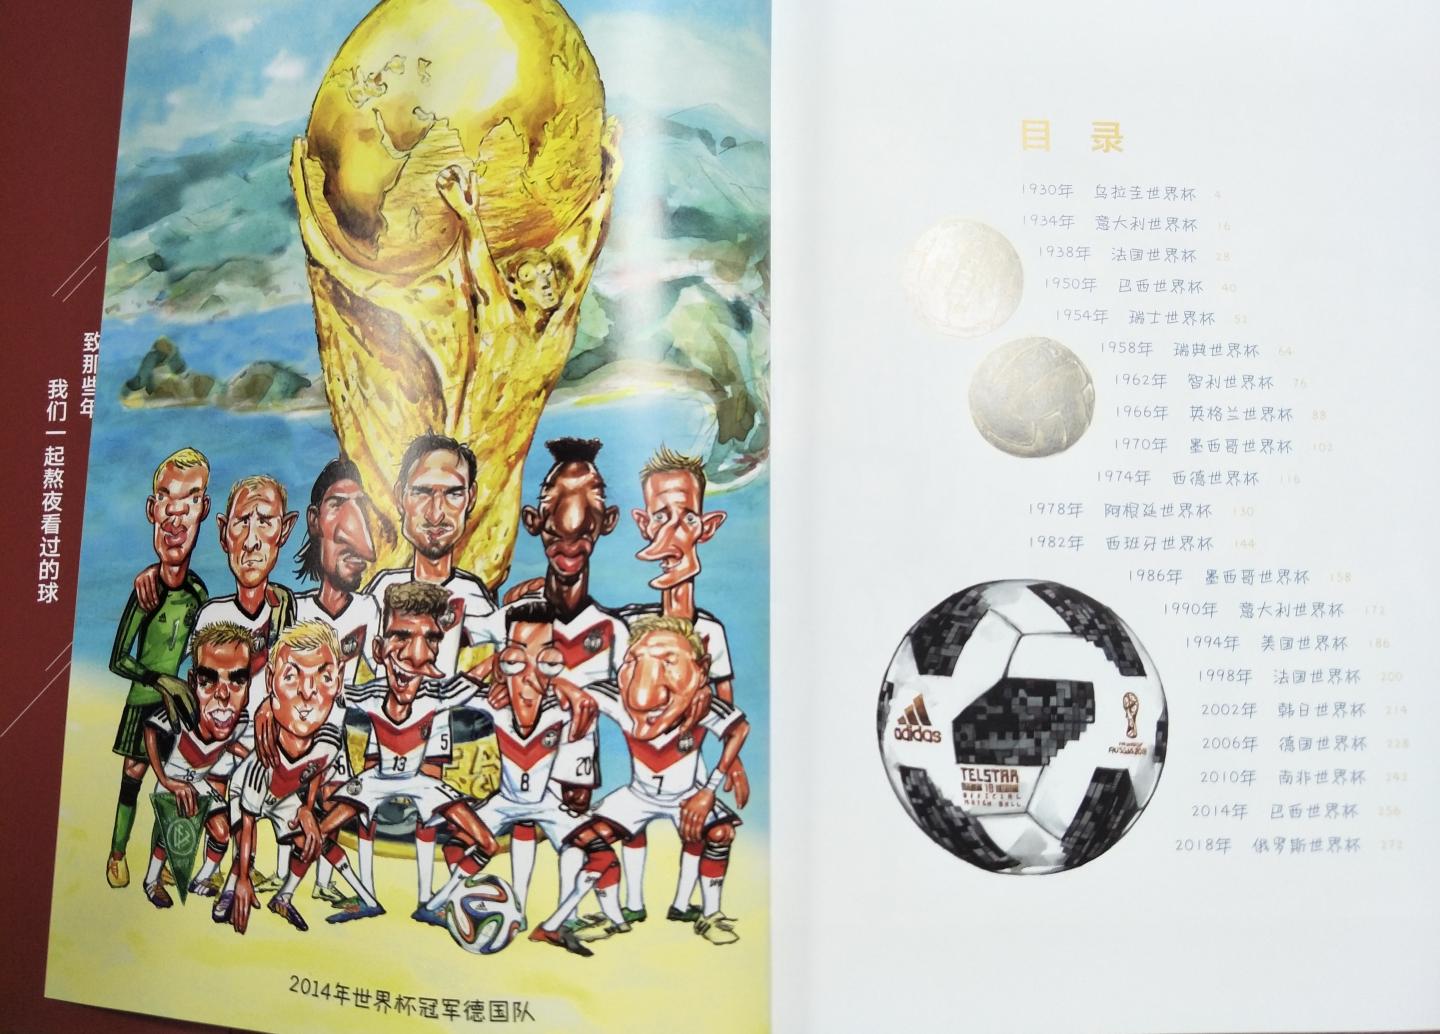 马上要世界杯了，精挑细选，给喜欢足球的侄子选择了这本关于世界杯历史的漫画书。非常厚实的一本书，图文并茂，内容丰富有趣，纸张精美，是送给喜欢足球的男孩不二之选。